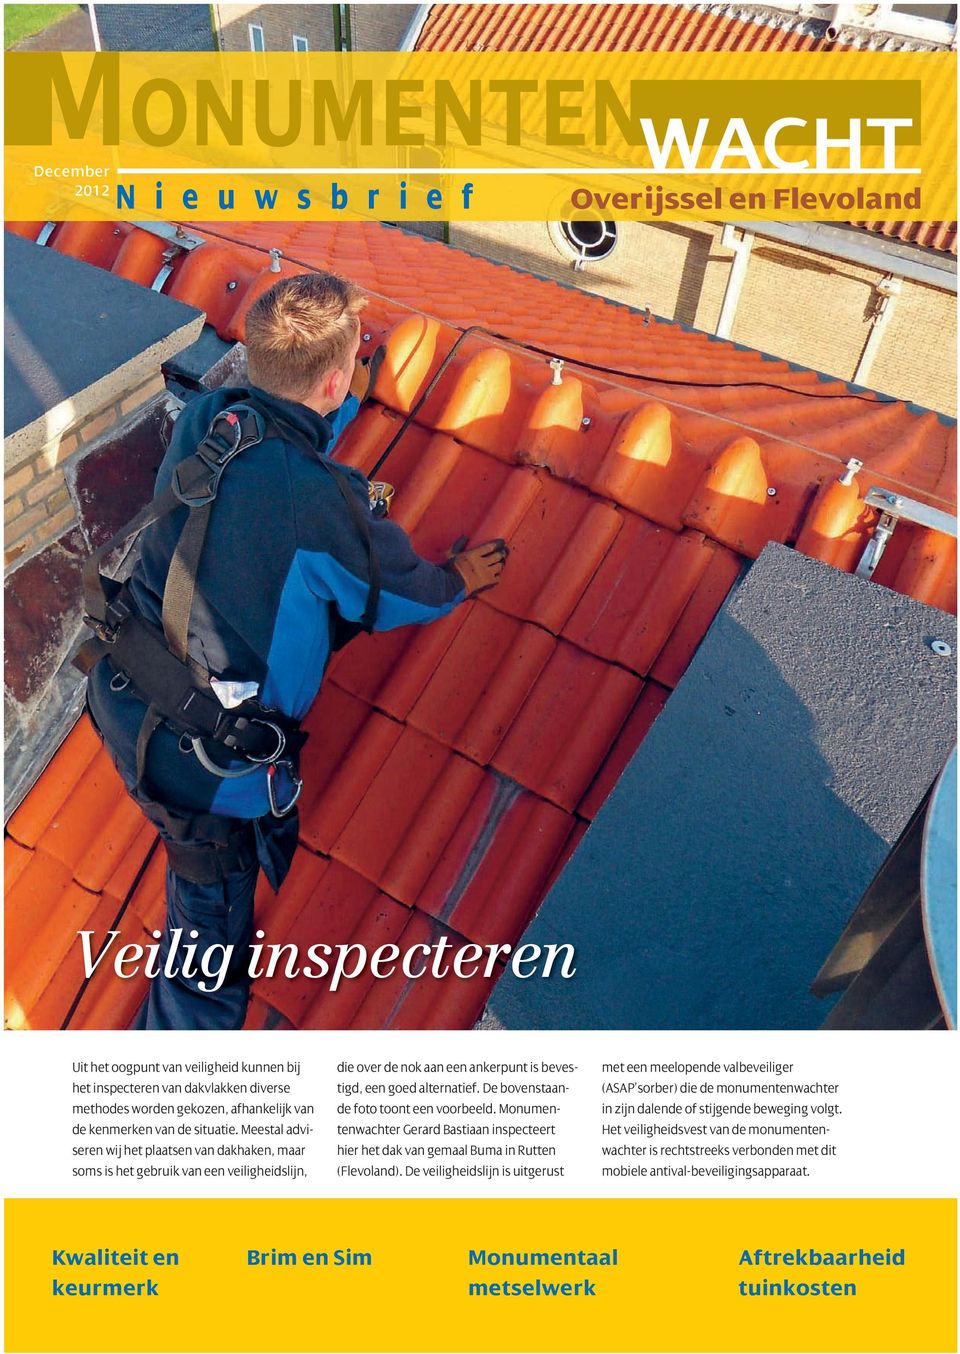 De bovenstaande foto toont een voorbeeld. Monumentenwachter Gerard Bastiaan inspecteert hier het dak van gemaal Buma in Rutten (Flevoland).